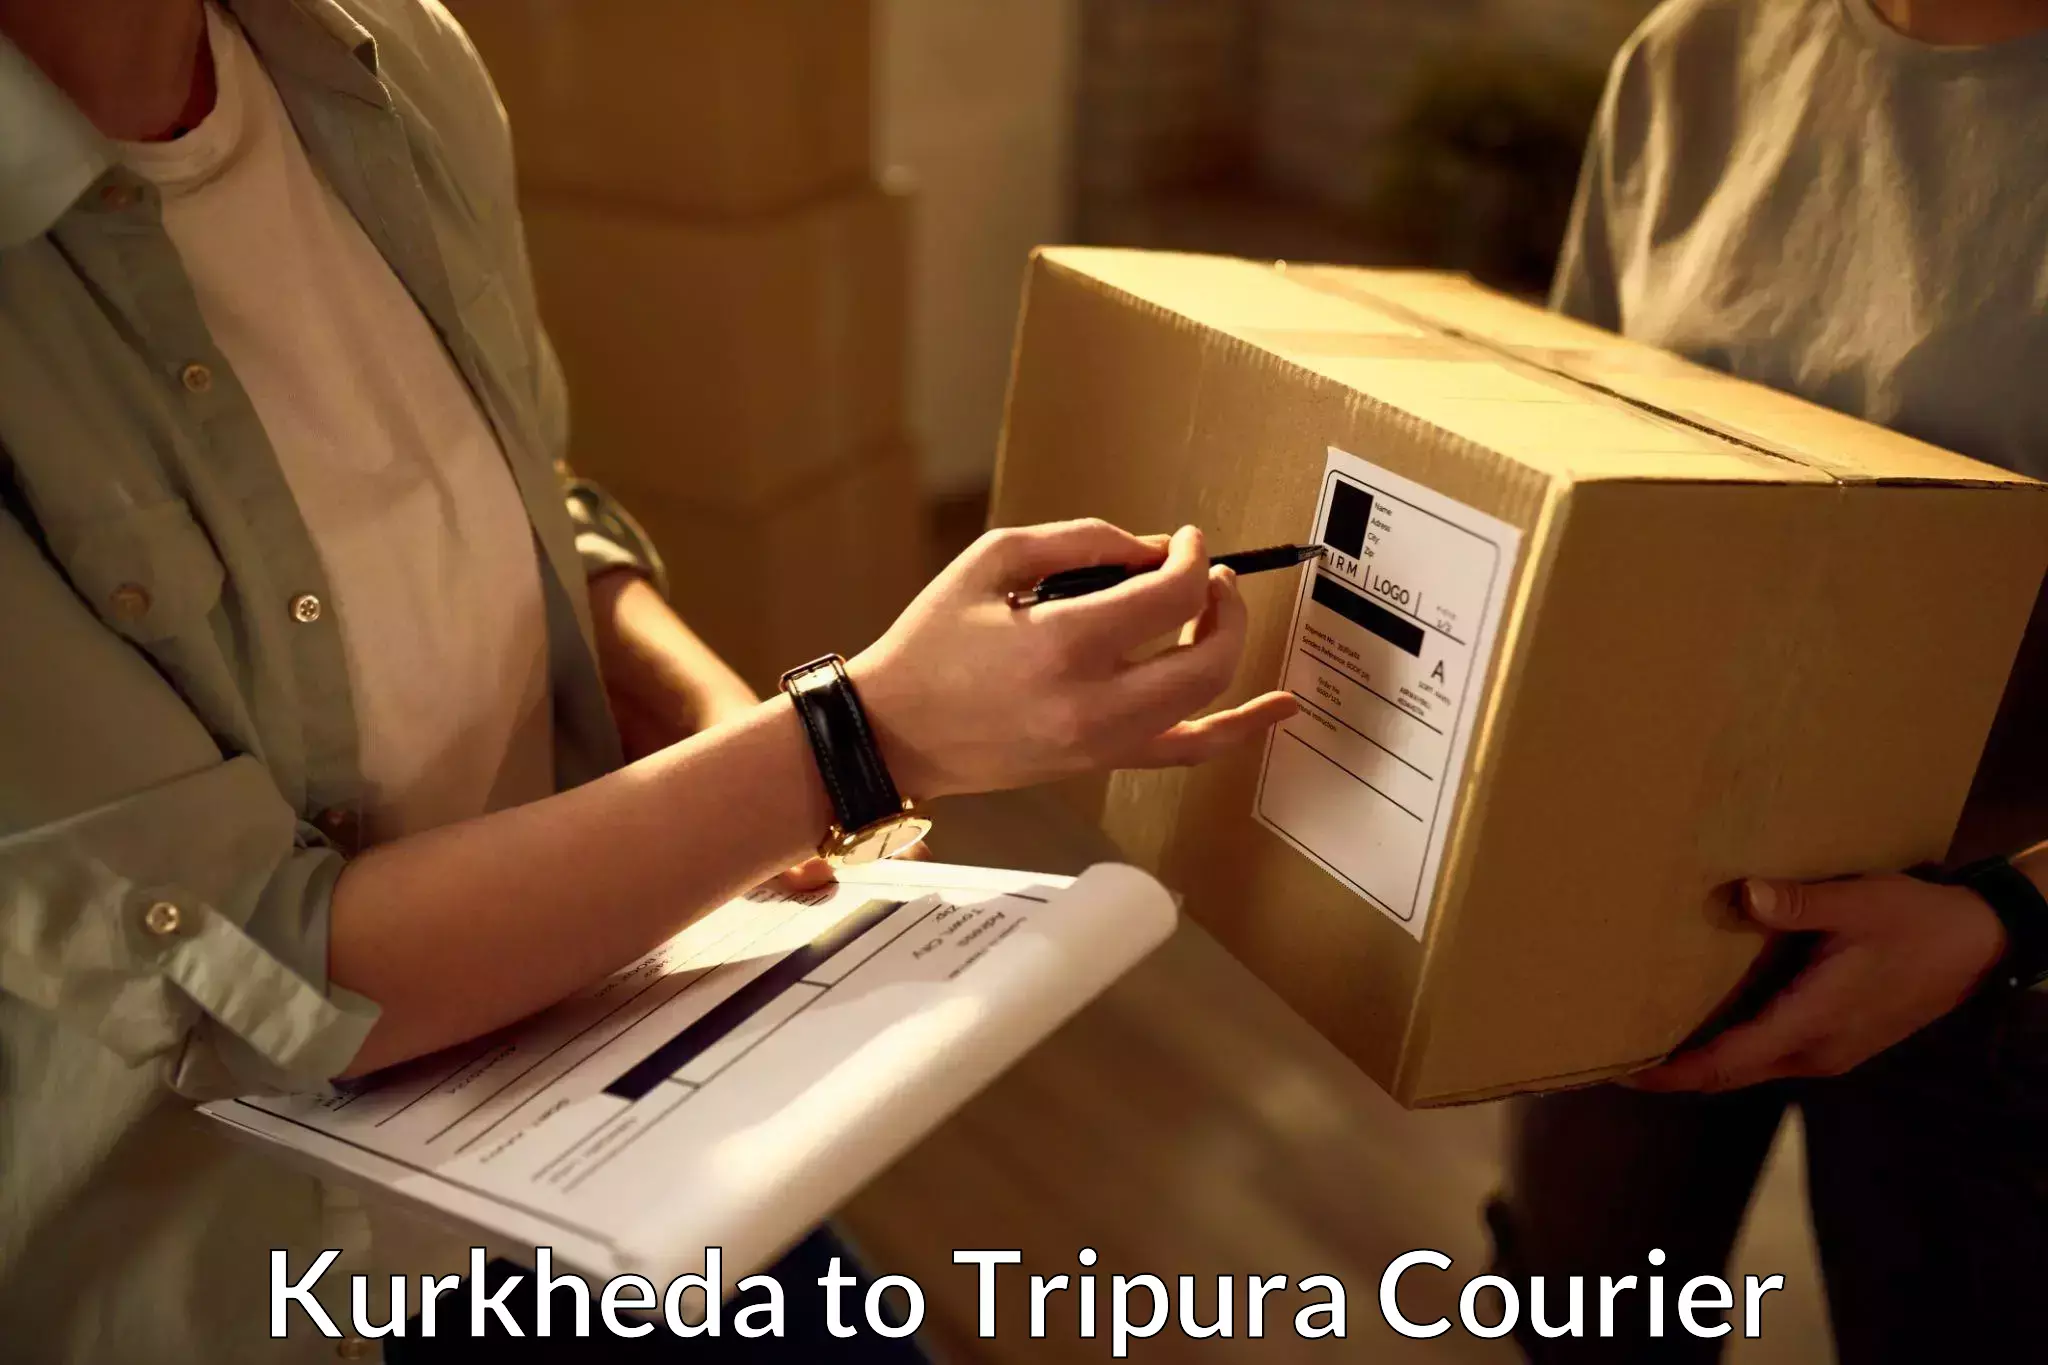 Express shipping in Kurkheda to Udaipur Tripura